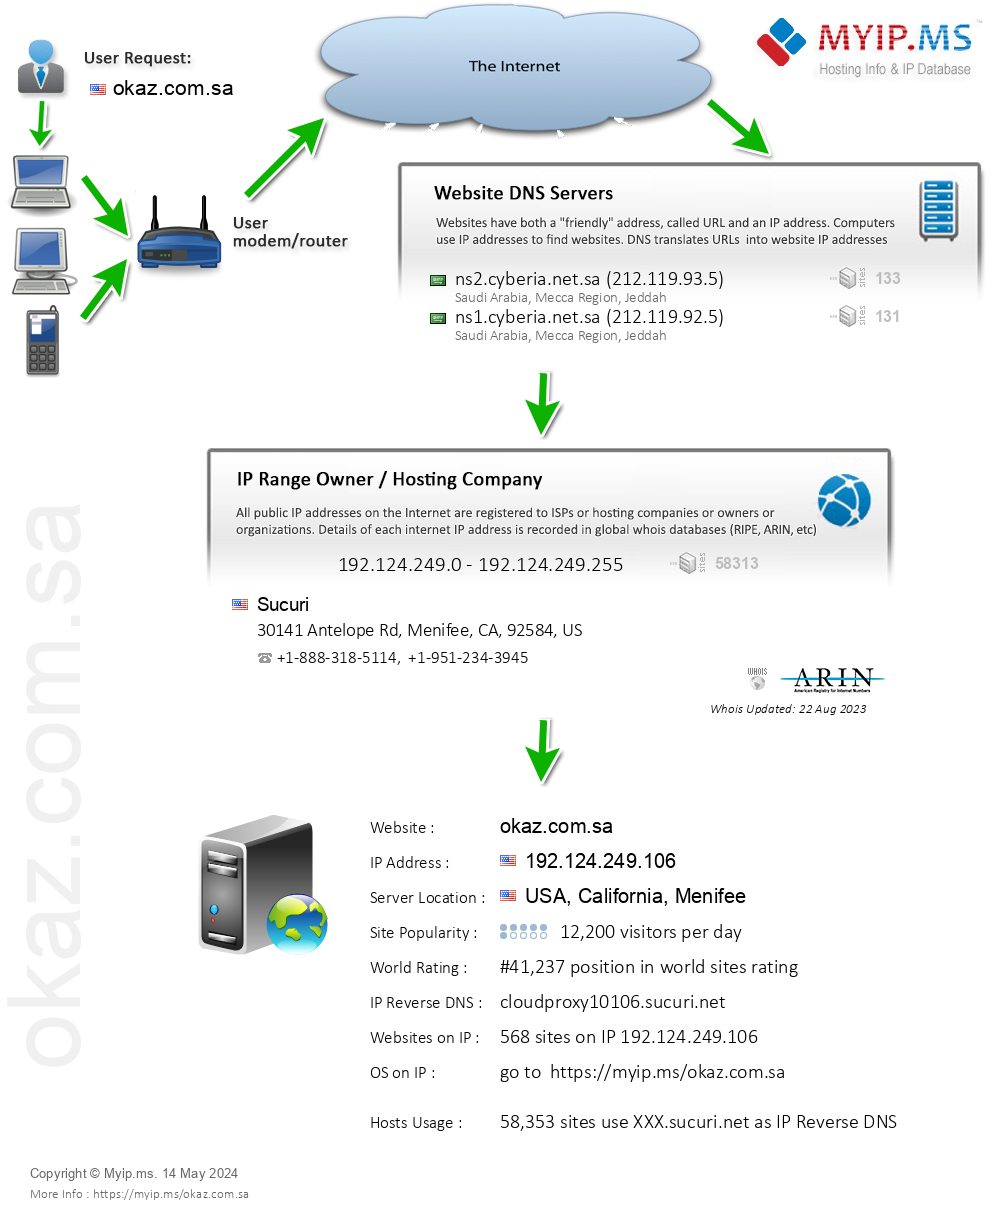 Okaz.com.sa - Website Hosting Visual IP Diagram